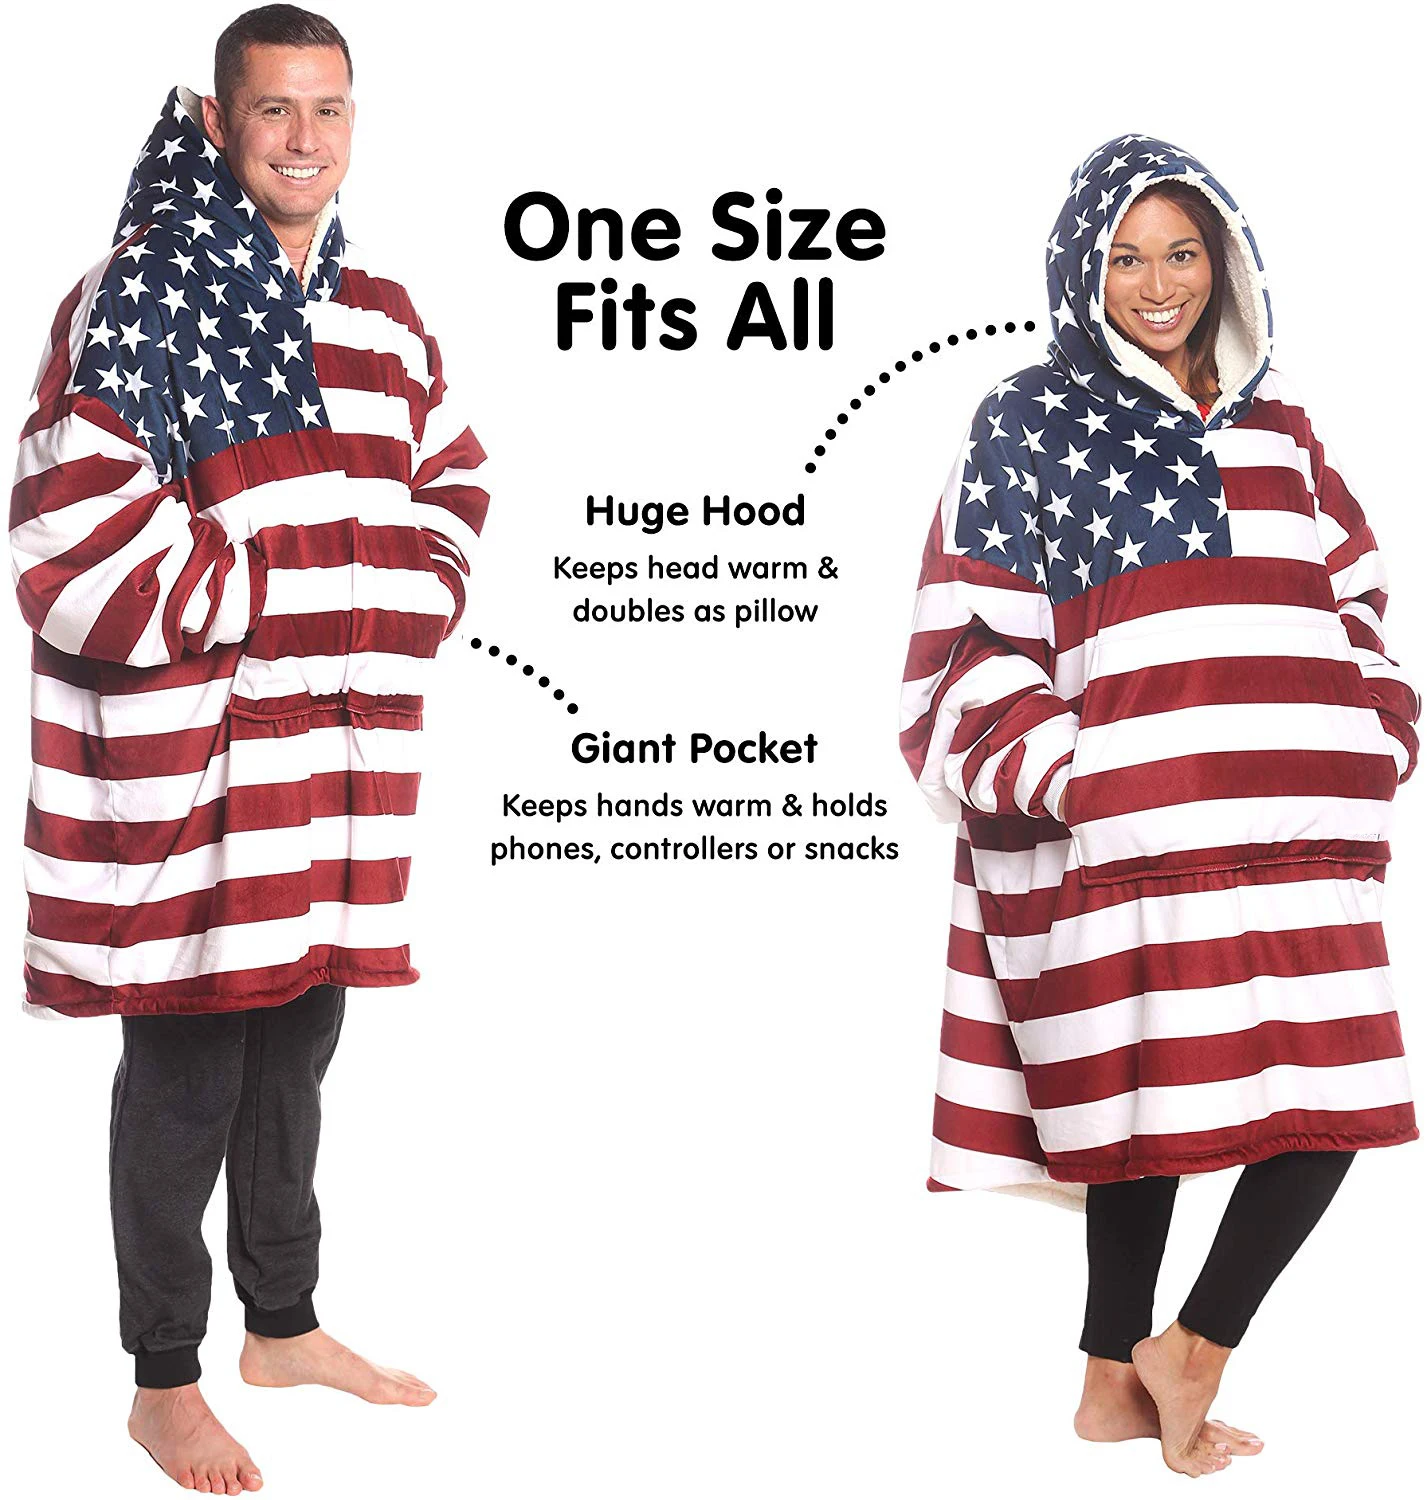 Премиум одеяло толстовка с подкладкой из шерпы супер мягкие теплые толстовки с капюшоном американский флаг оверсайз флис пуловер карман